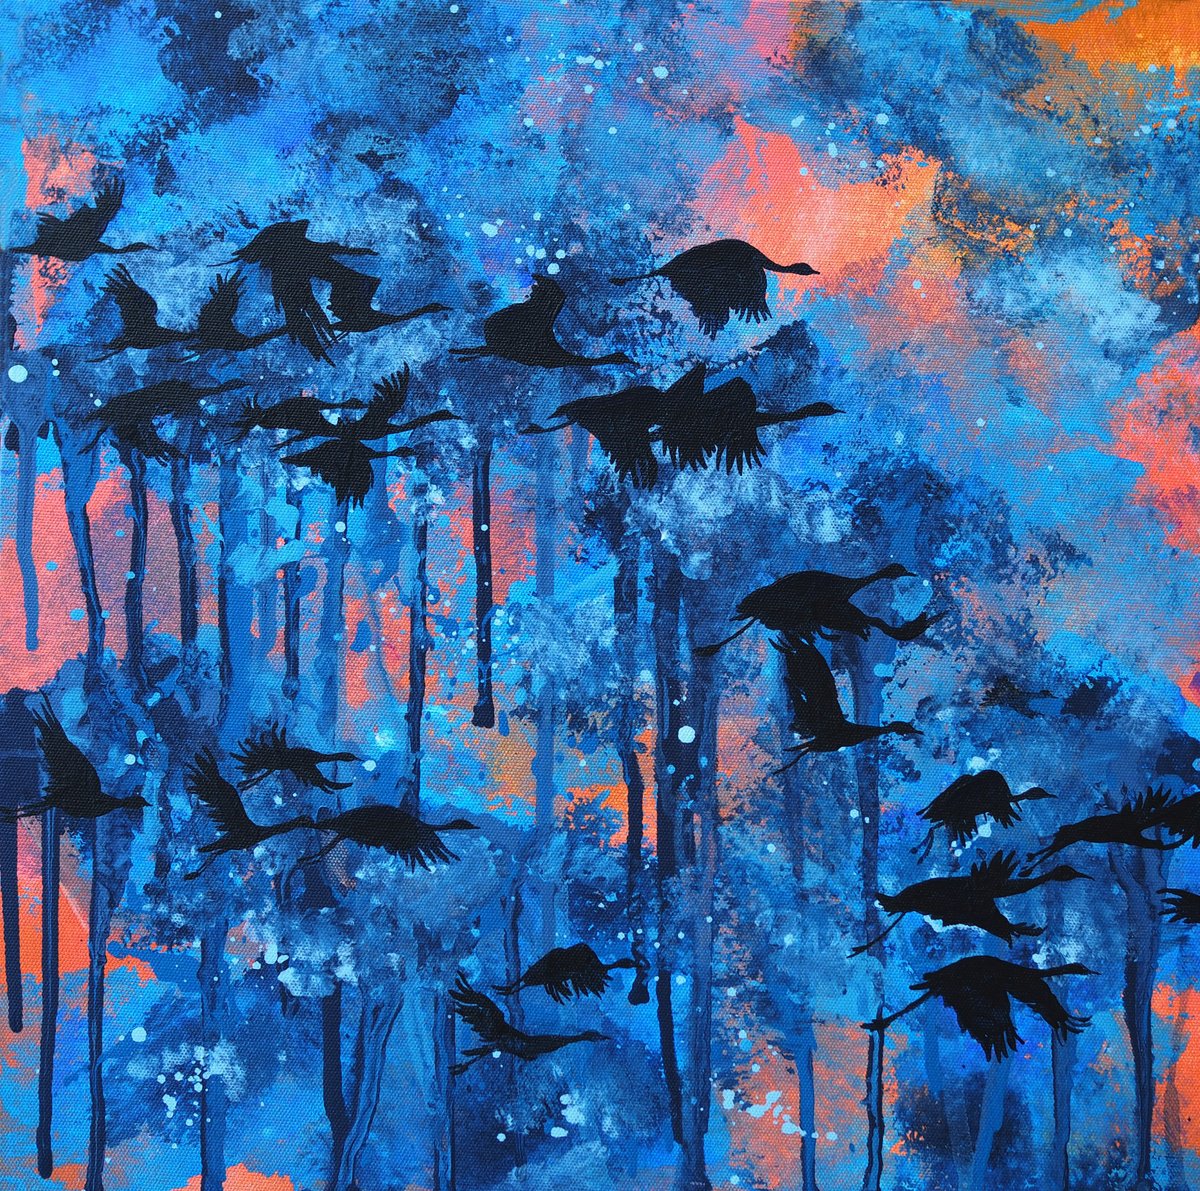 Migratory birds by Delnara El